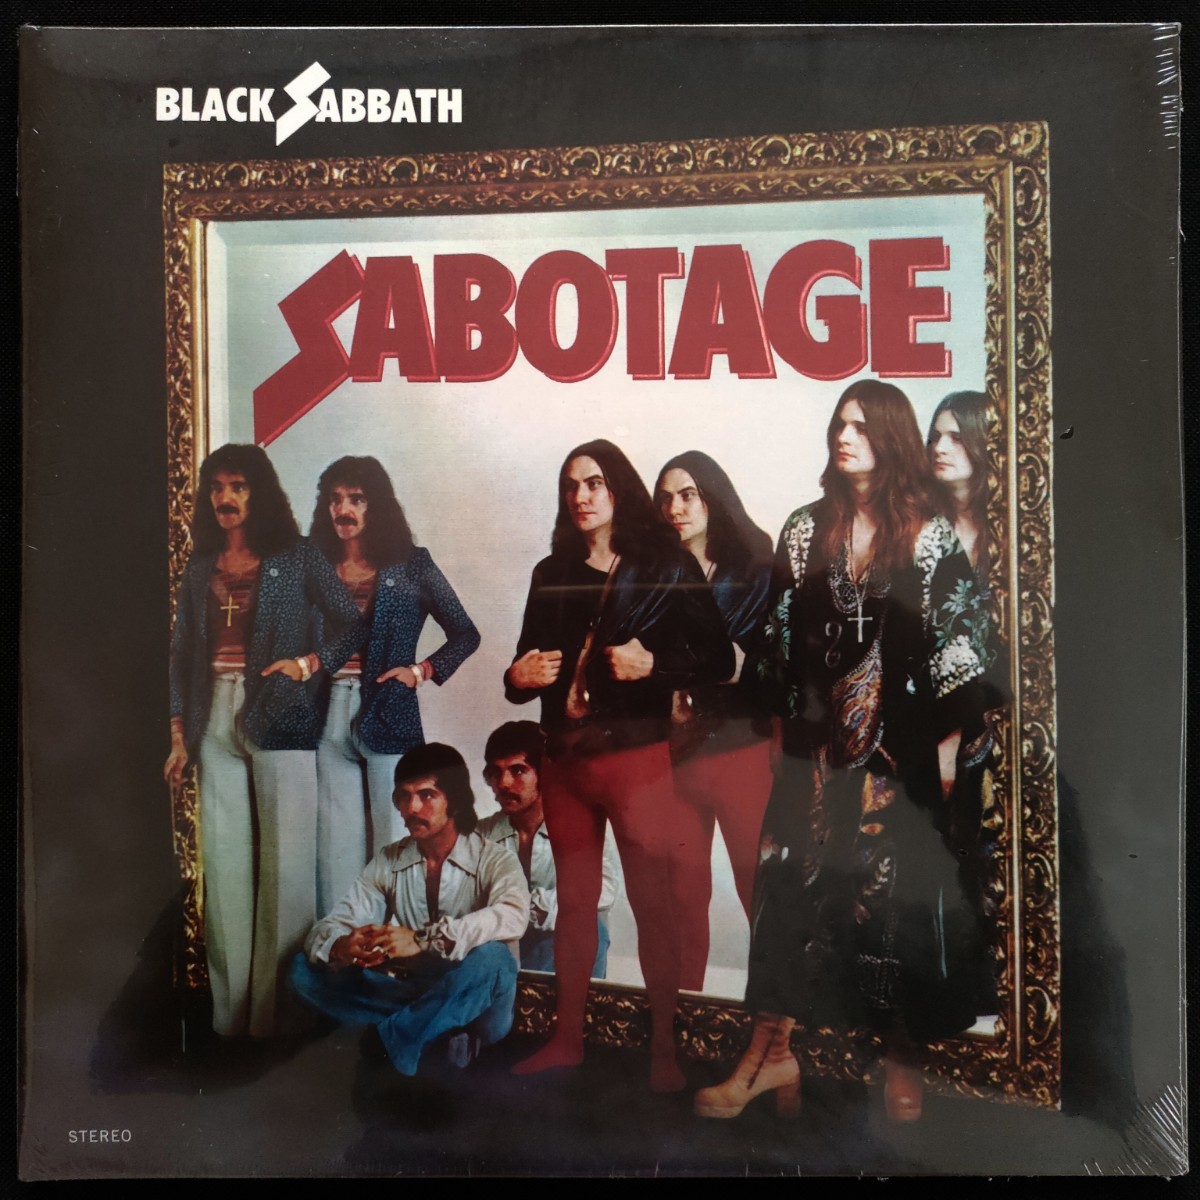 新品未開封LPレコード ブラック・サバス Black Sabbath サボタージュ Sabotage US盤アメリカ製6thアルバム180g重量盤 アナログ盤_画像1